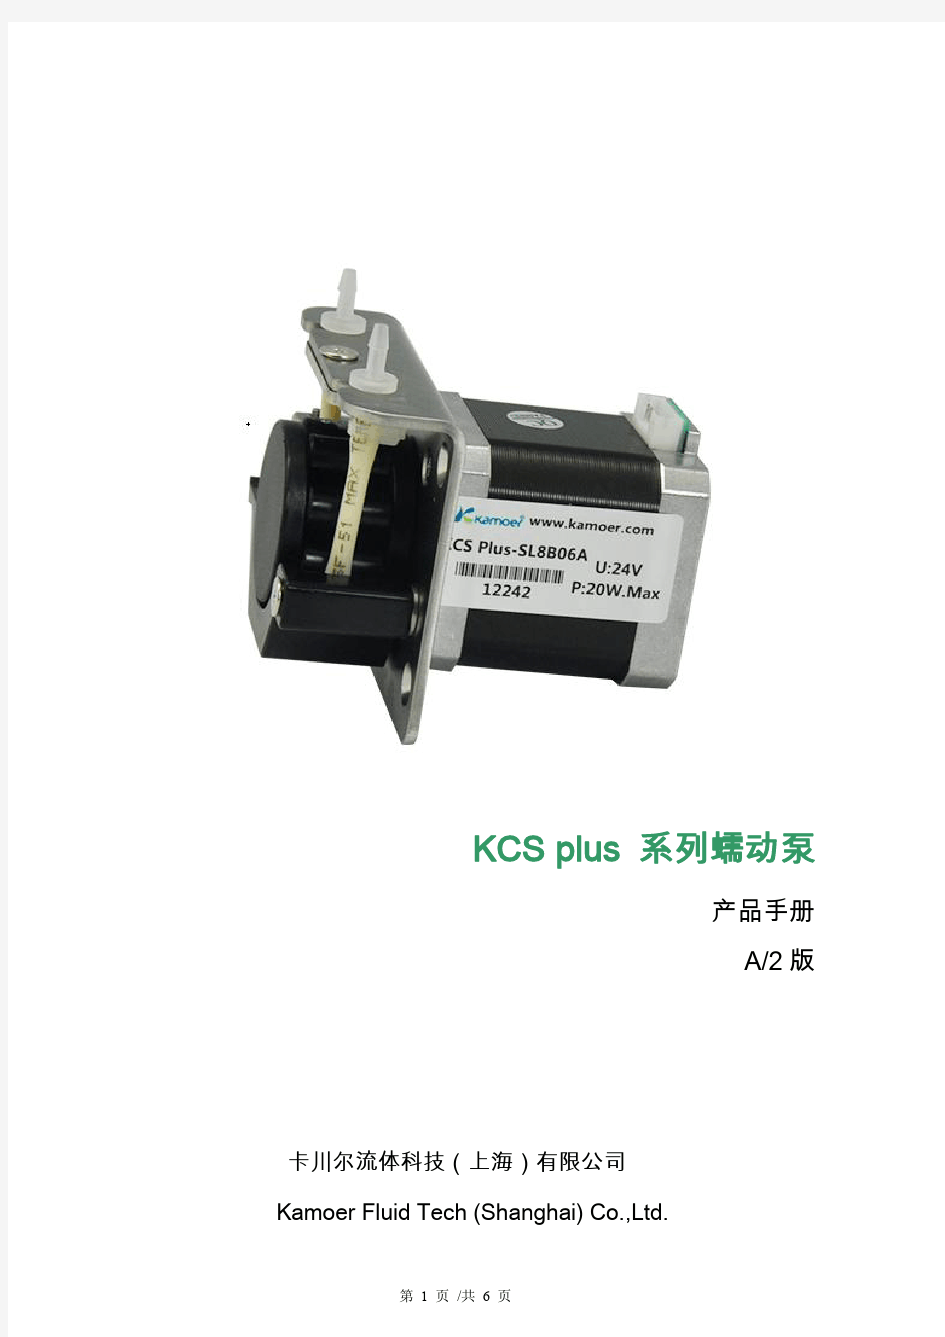 卡川尔、卡默尔、kamoer蠕动泵.KCS plus产品手册.A2